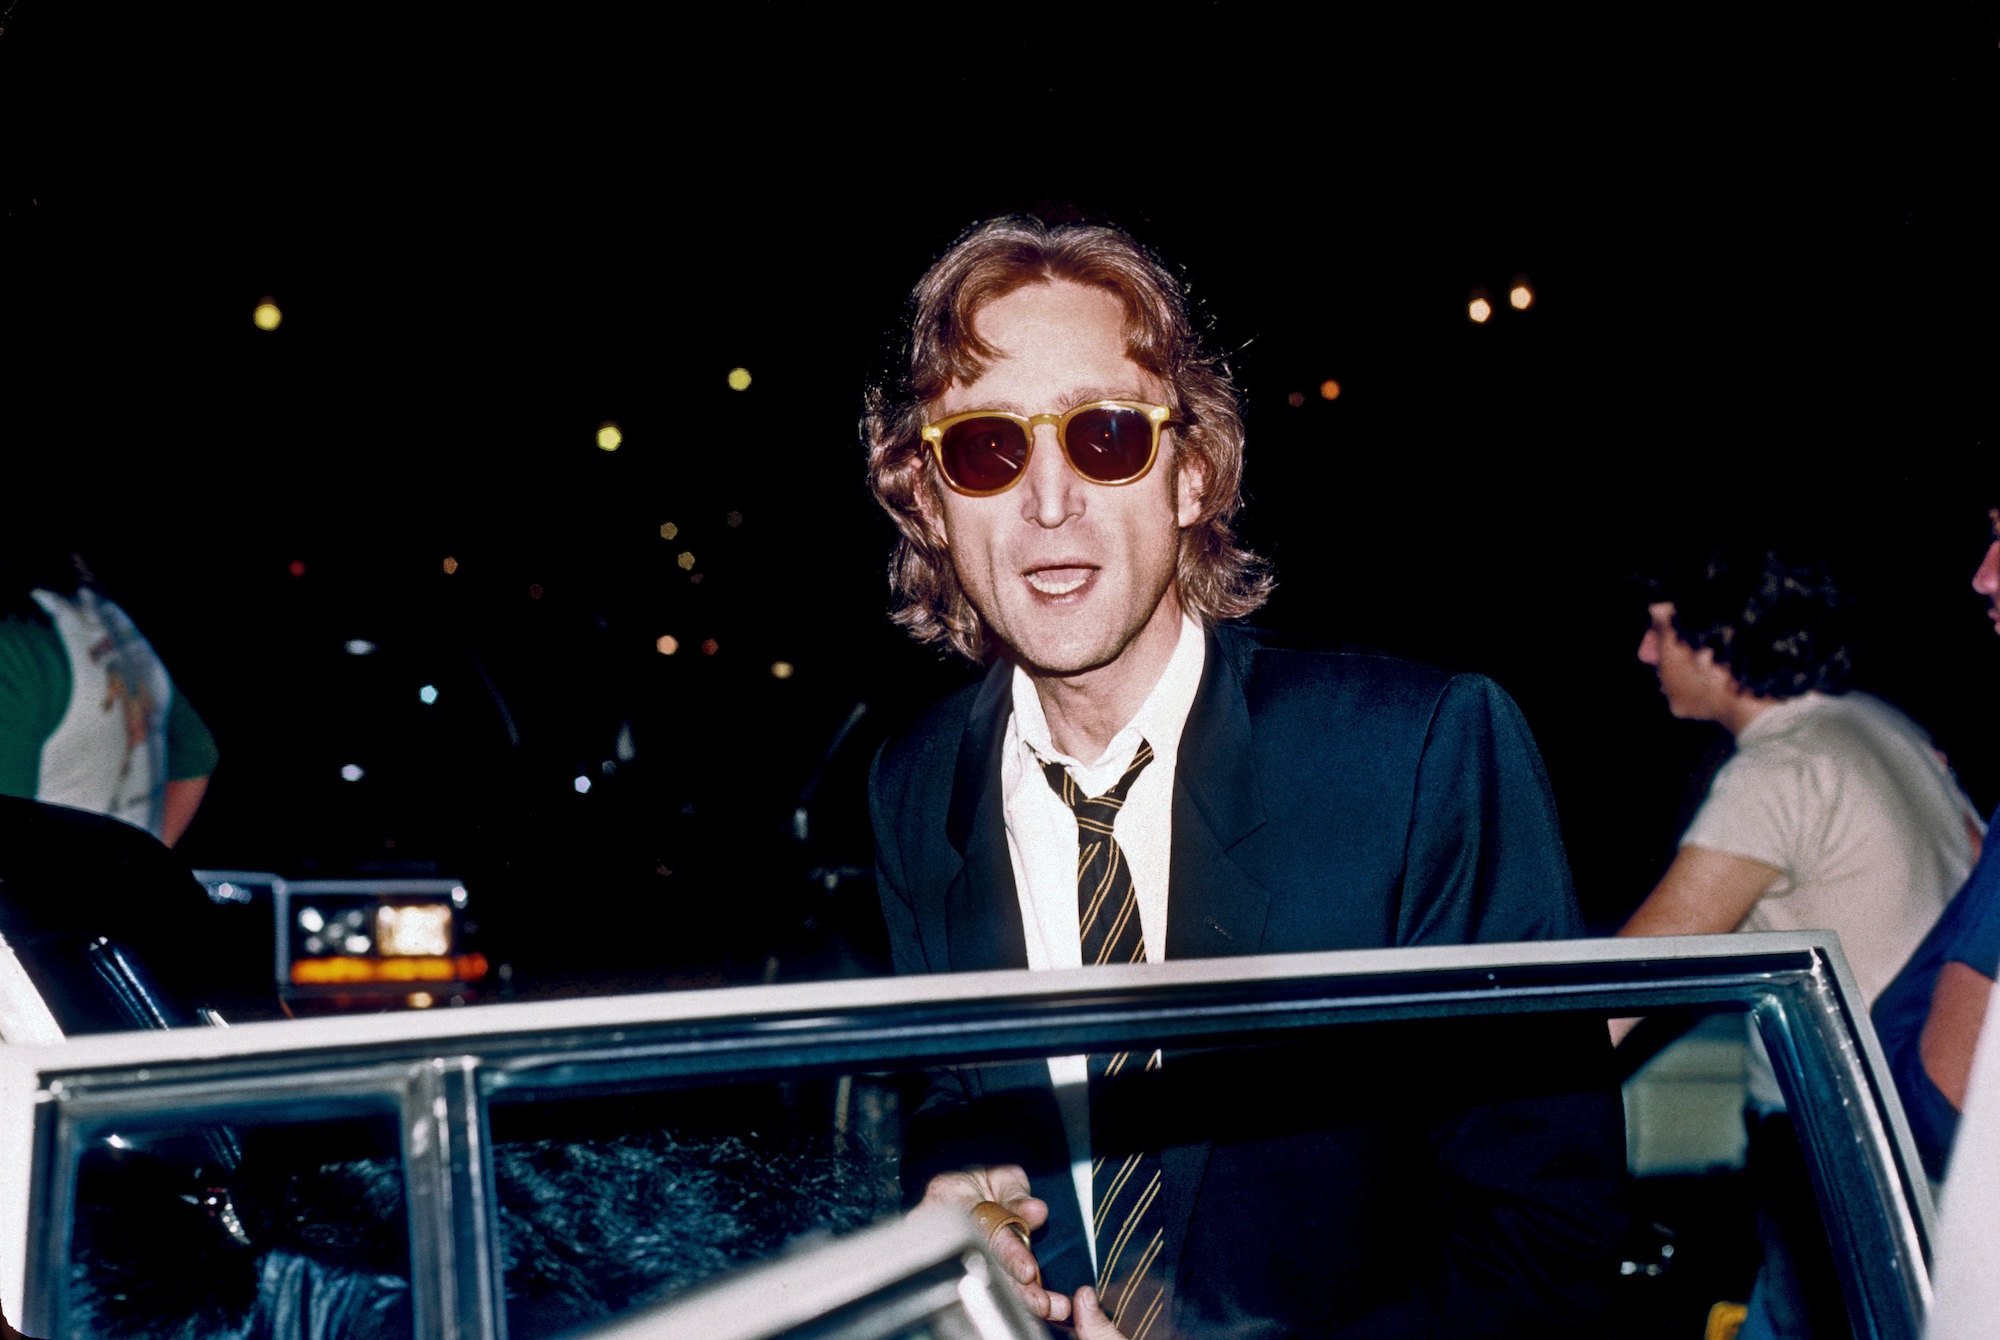 John Lennon arrives at the Times Square recording studio